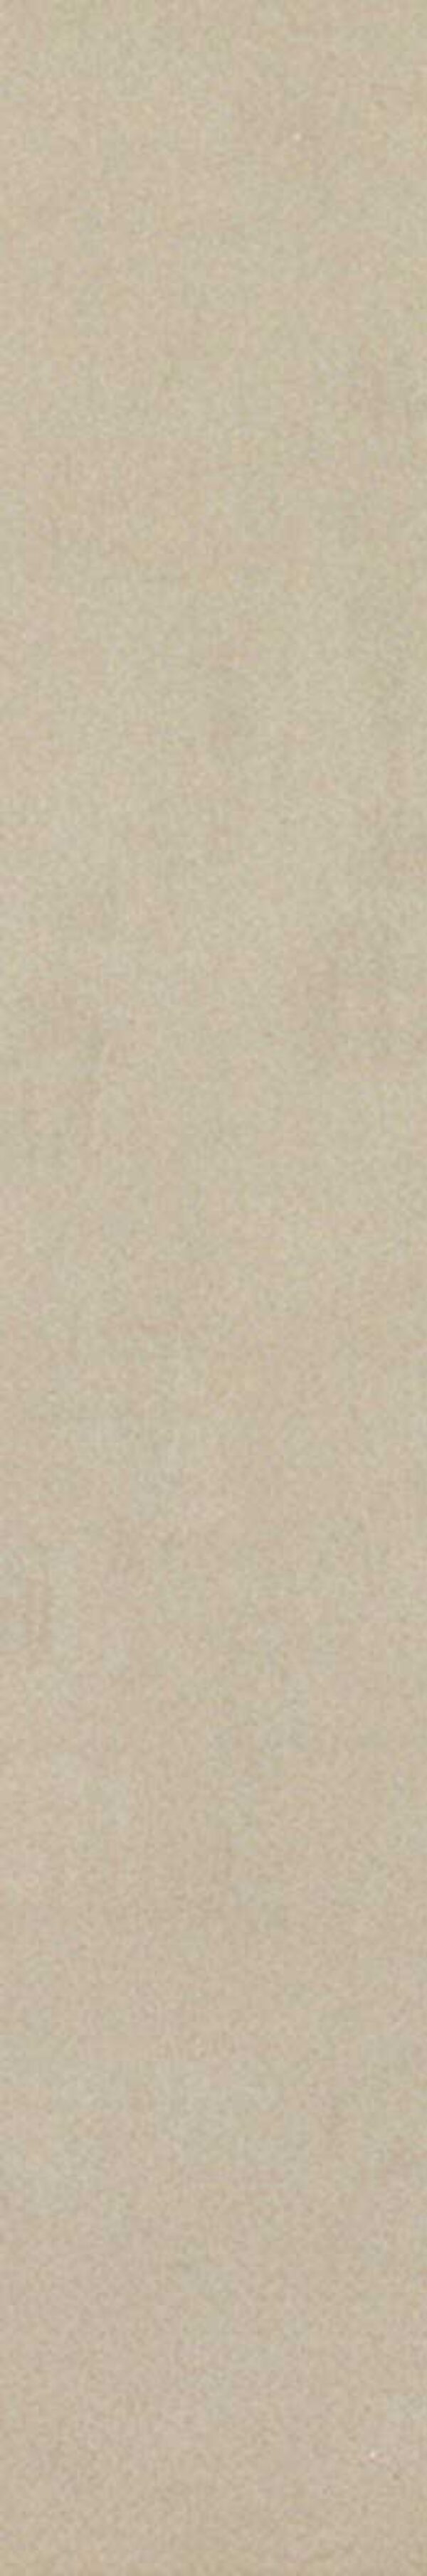 Gresie spatii publice Marazzi Neutro Sabbia 10x60 cm Rectificata M834